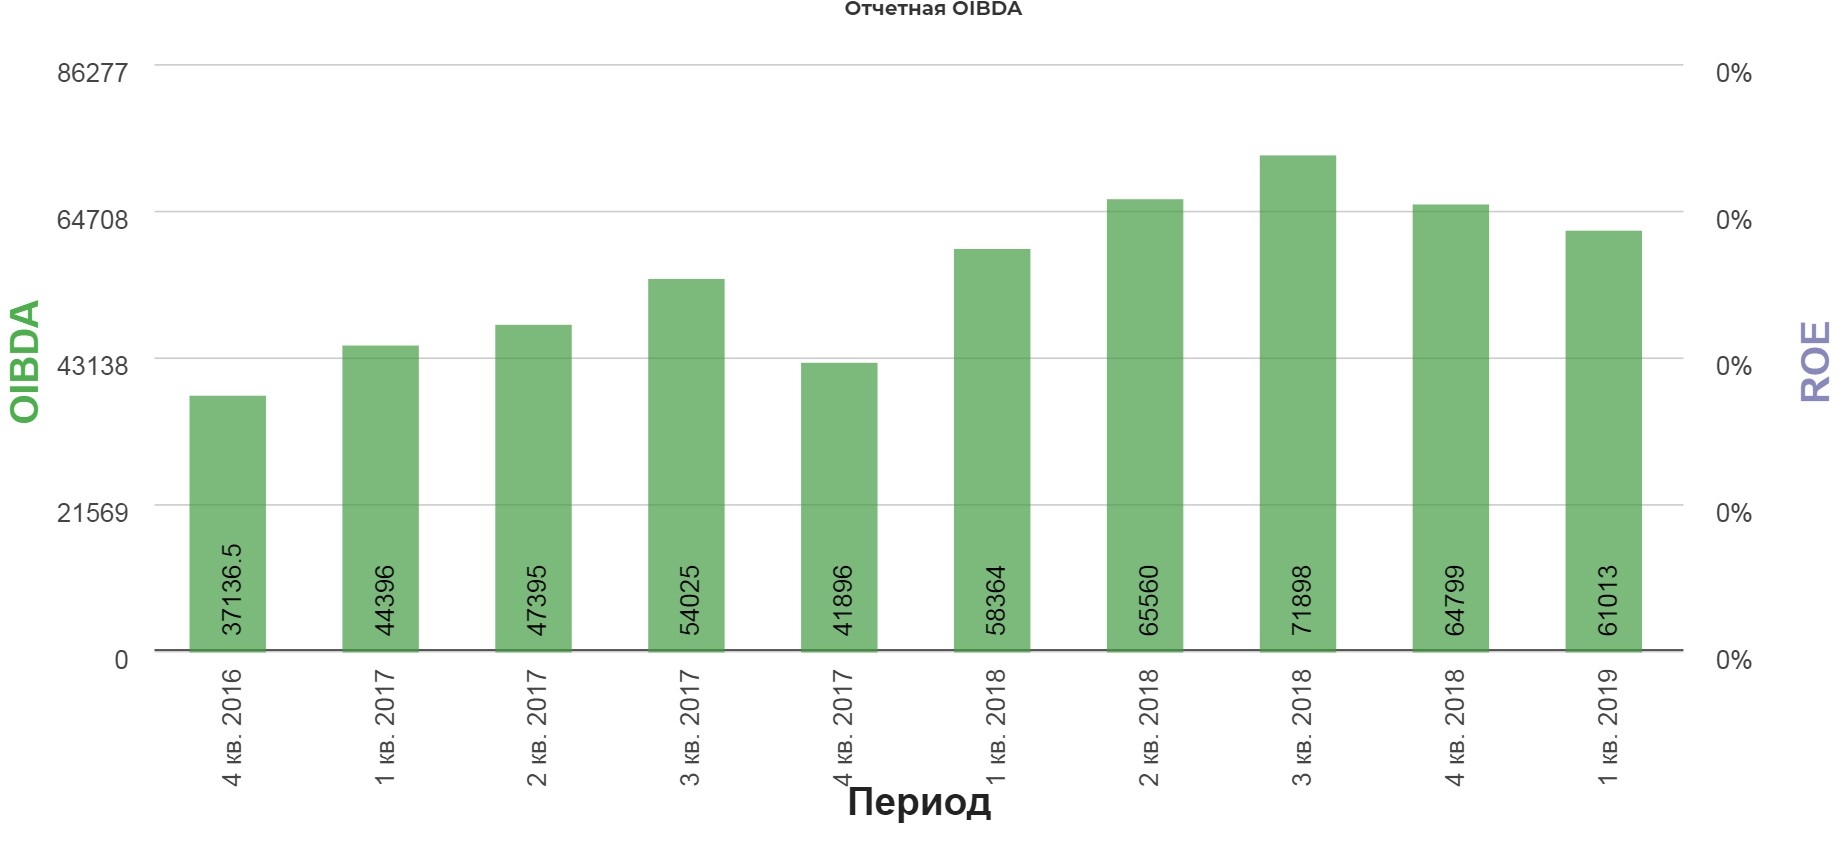 Отчетность макдональдс. IQOS продажи в России статистика. Доход сети макдональдс за 2019 год.